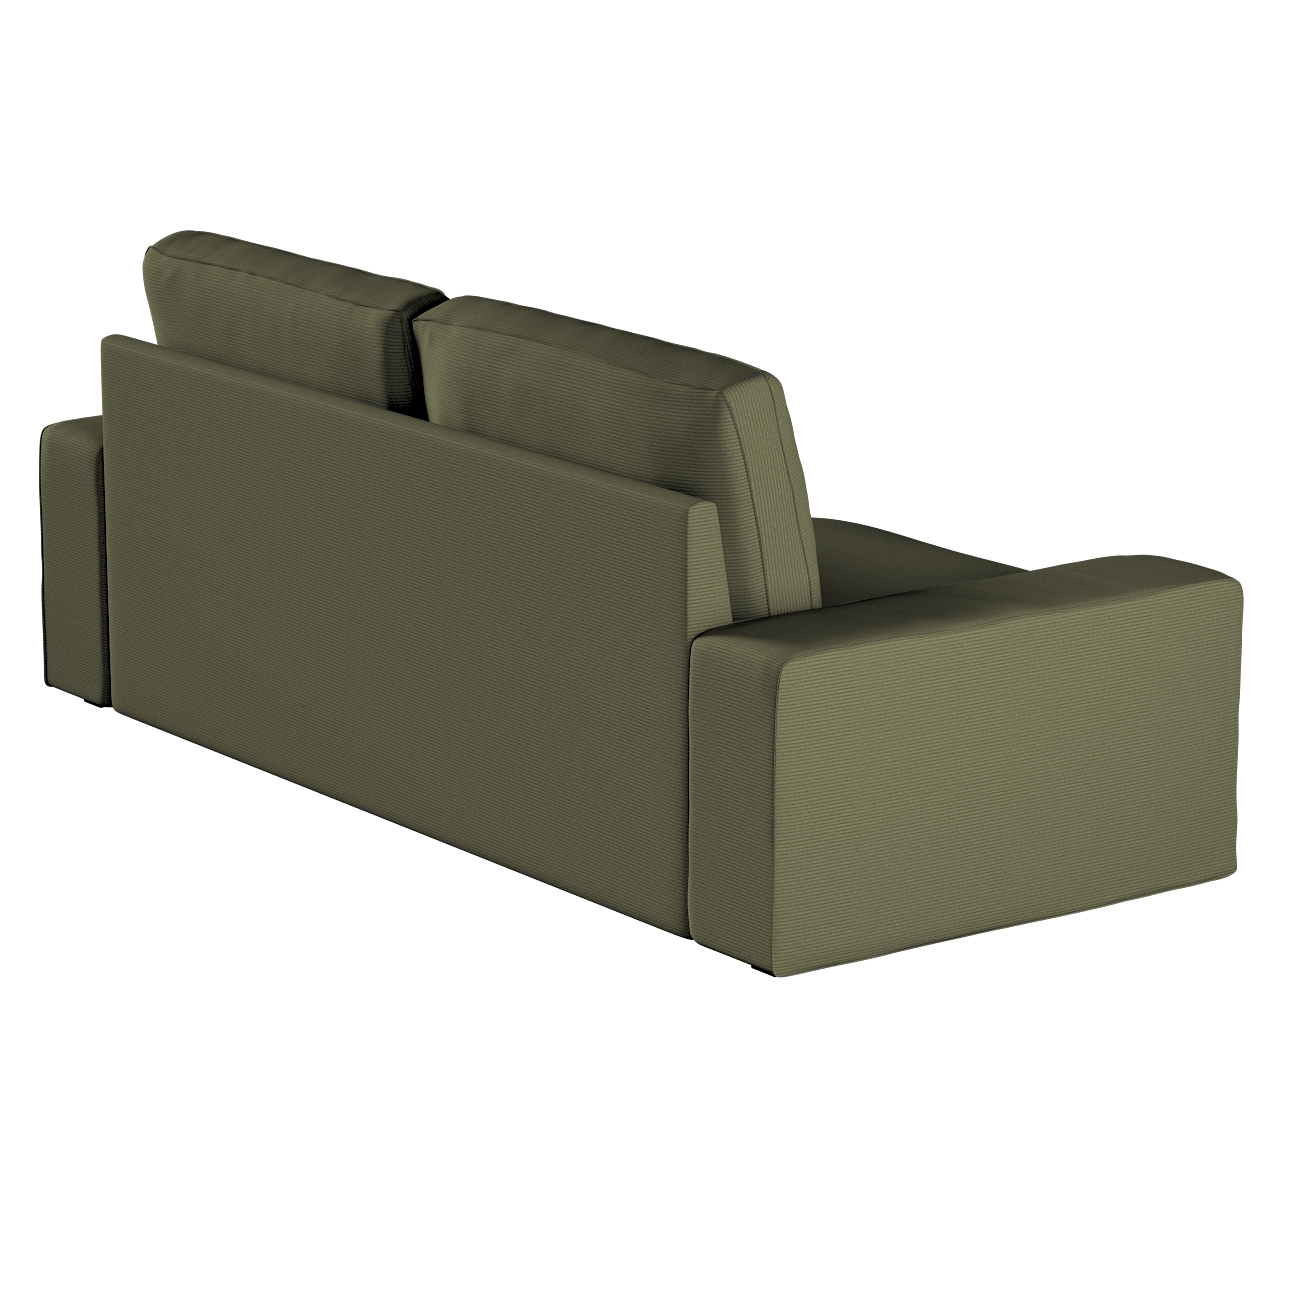 Bezug für Kivik 3-Sitzer Sofa, olivgrün, Bezug für Sofa Kivik 3-Sitzer, Man günstig online kaufen